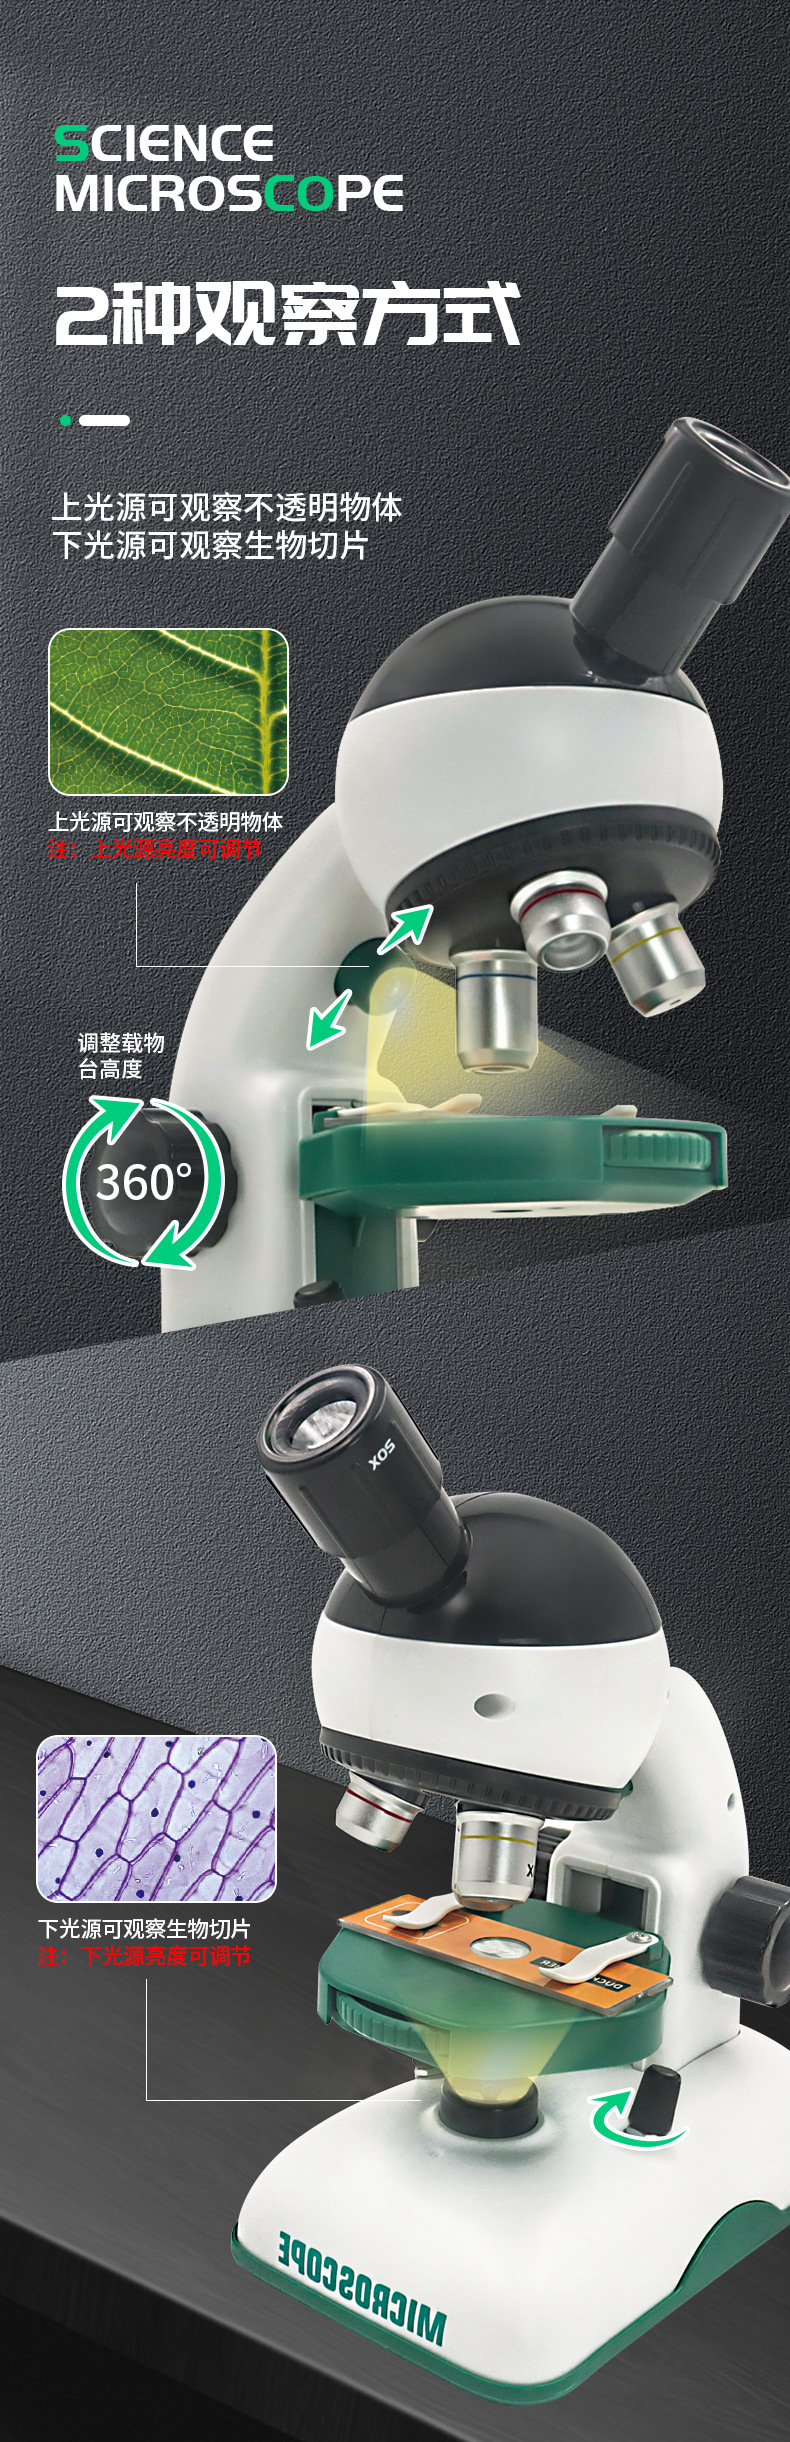 新款儿童显微镜玩具套装高清1200倍光学显微镜小学生科学实验教具详情5